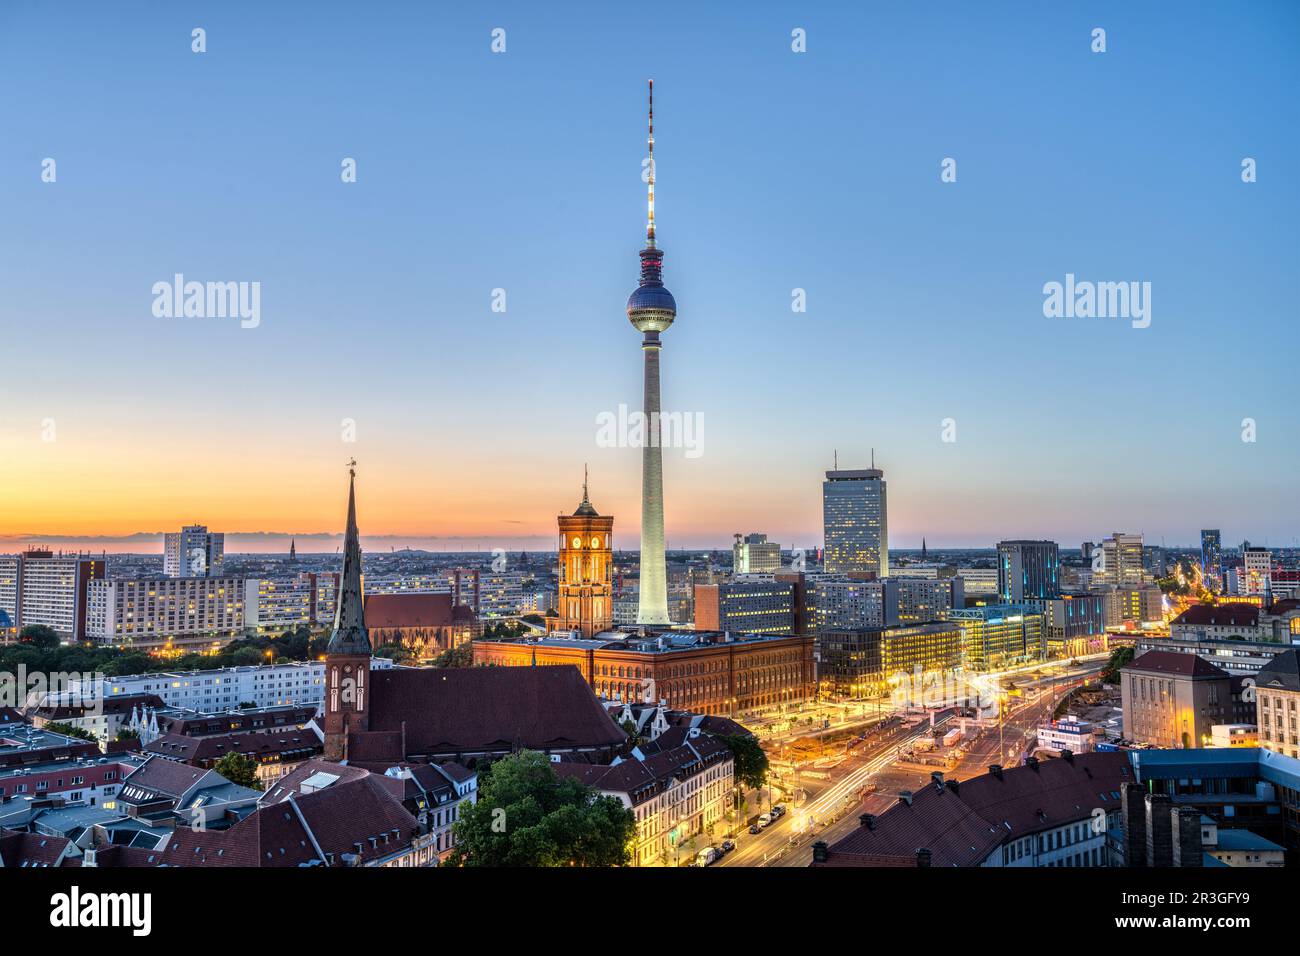 La tour de télévision emblématique et Berlin Mitte avec l'hôtel de ville au crépuscule Banque D'Images